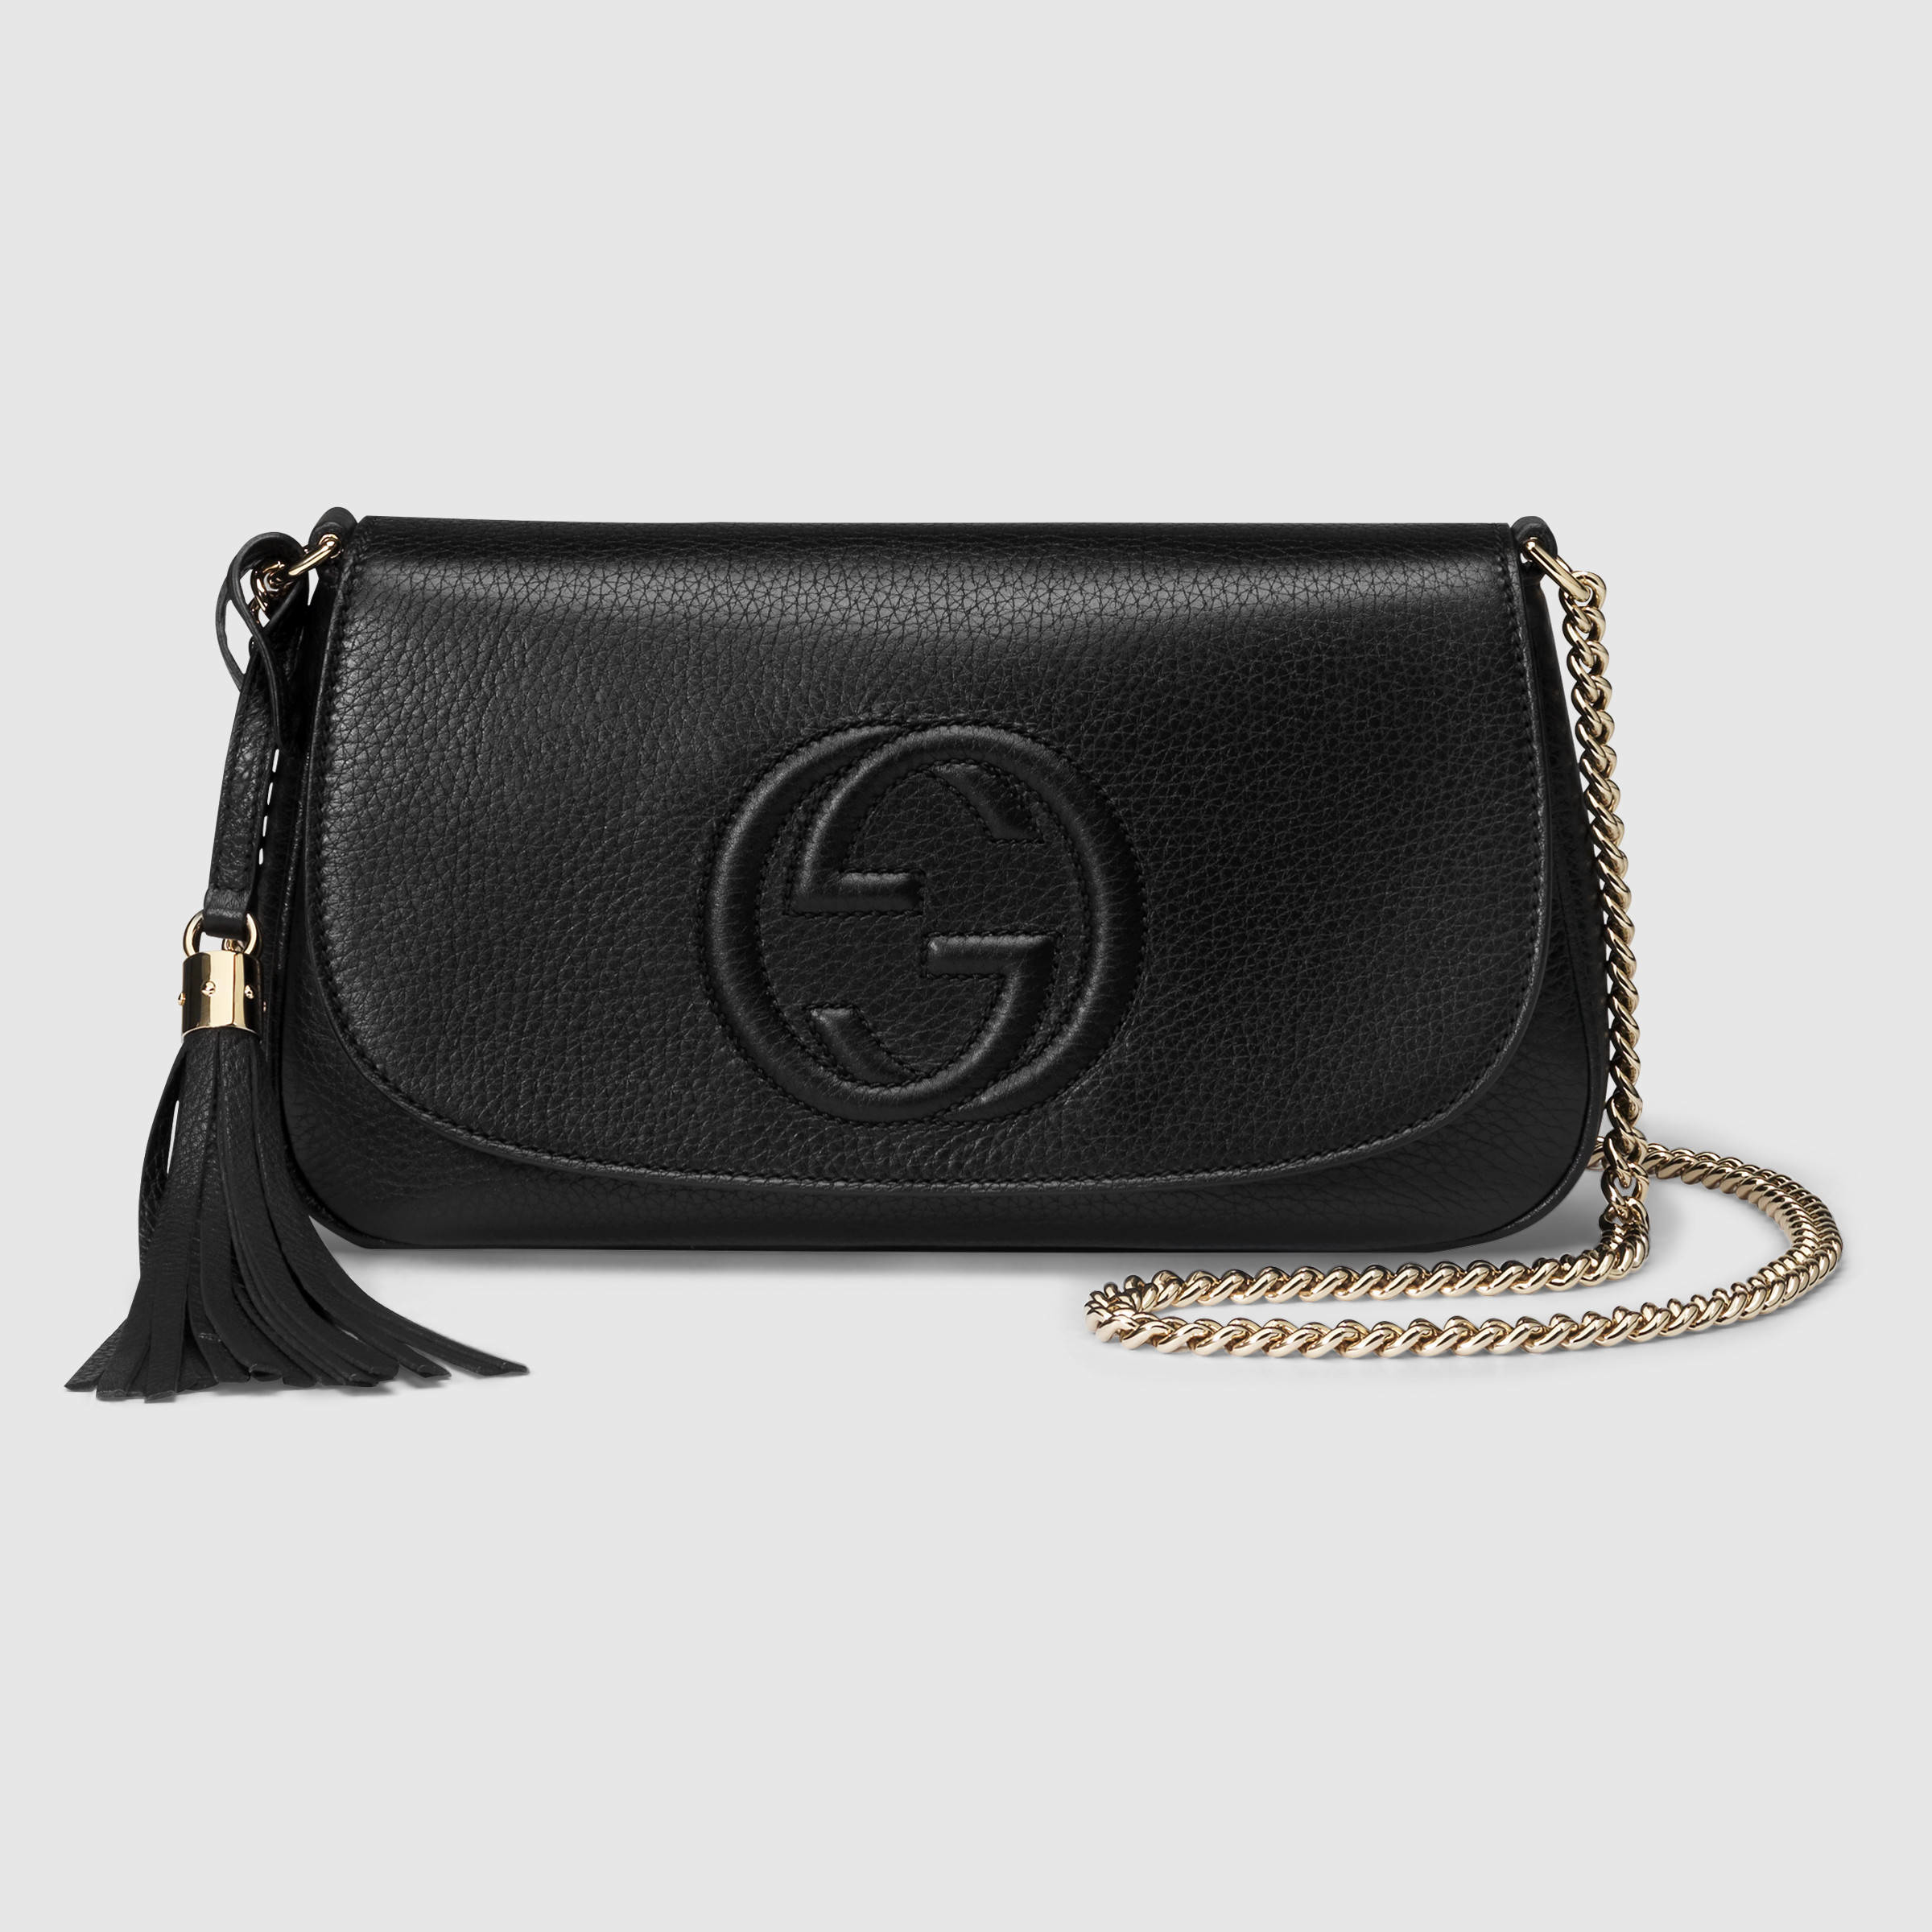 Gucci Soho Leather Shoulder Bag in Black | Lyst